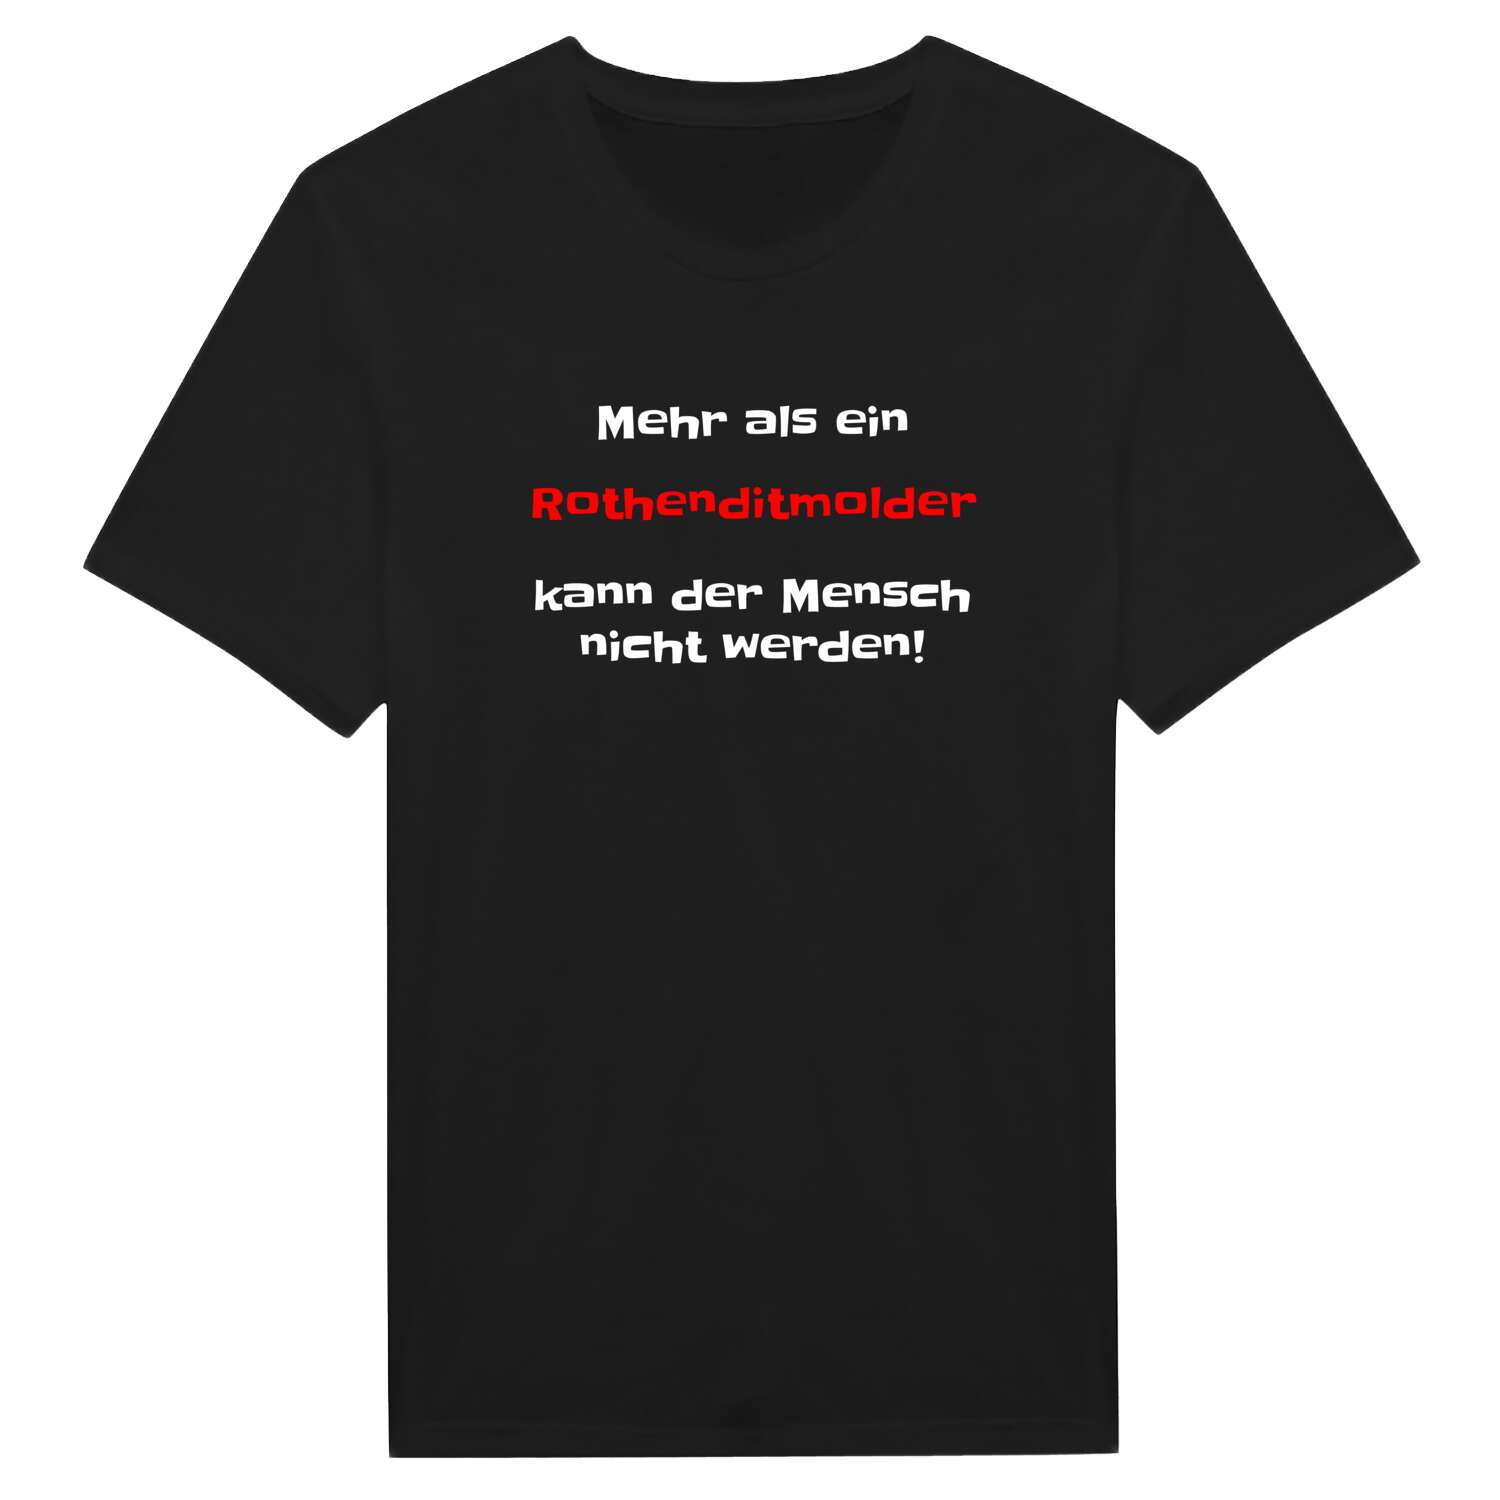 Rothenditmold T-Shirt »Mehr als ein«